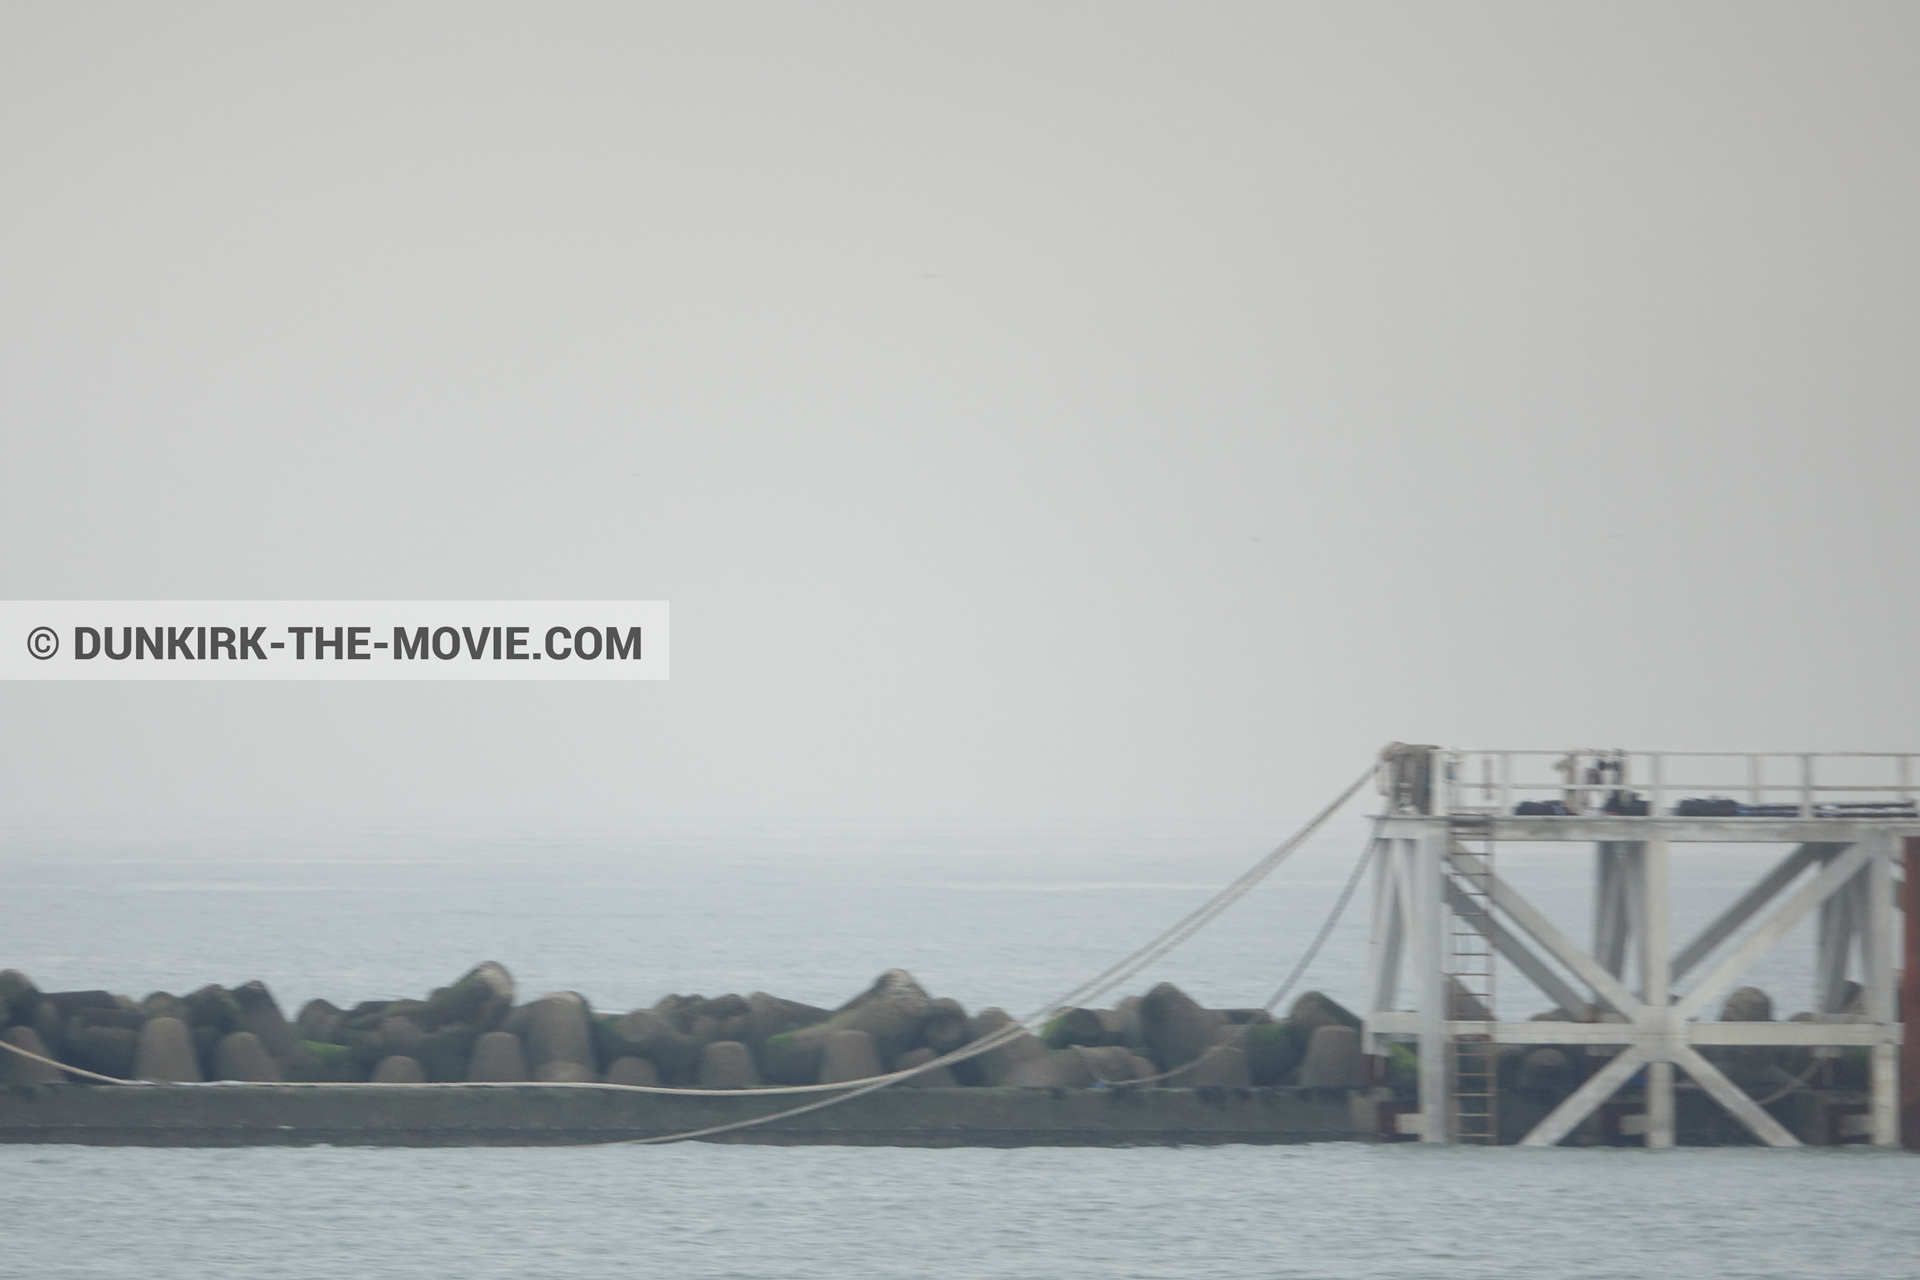 Fotos con cielo gris, muelle del ESTE, mares calma,  durante el rodaje de la película Dunkerque de Nolan